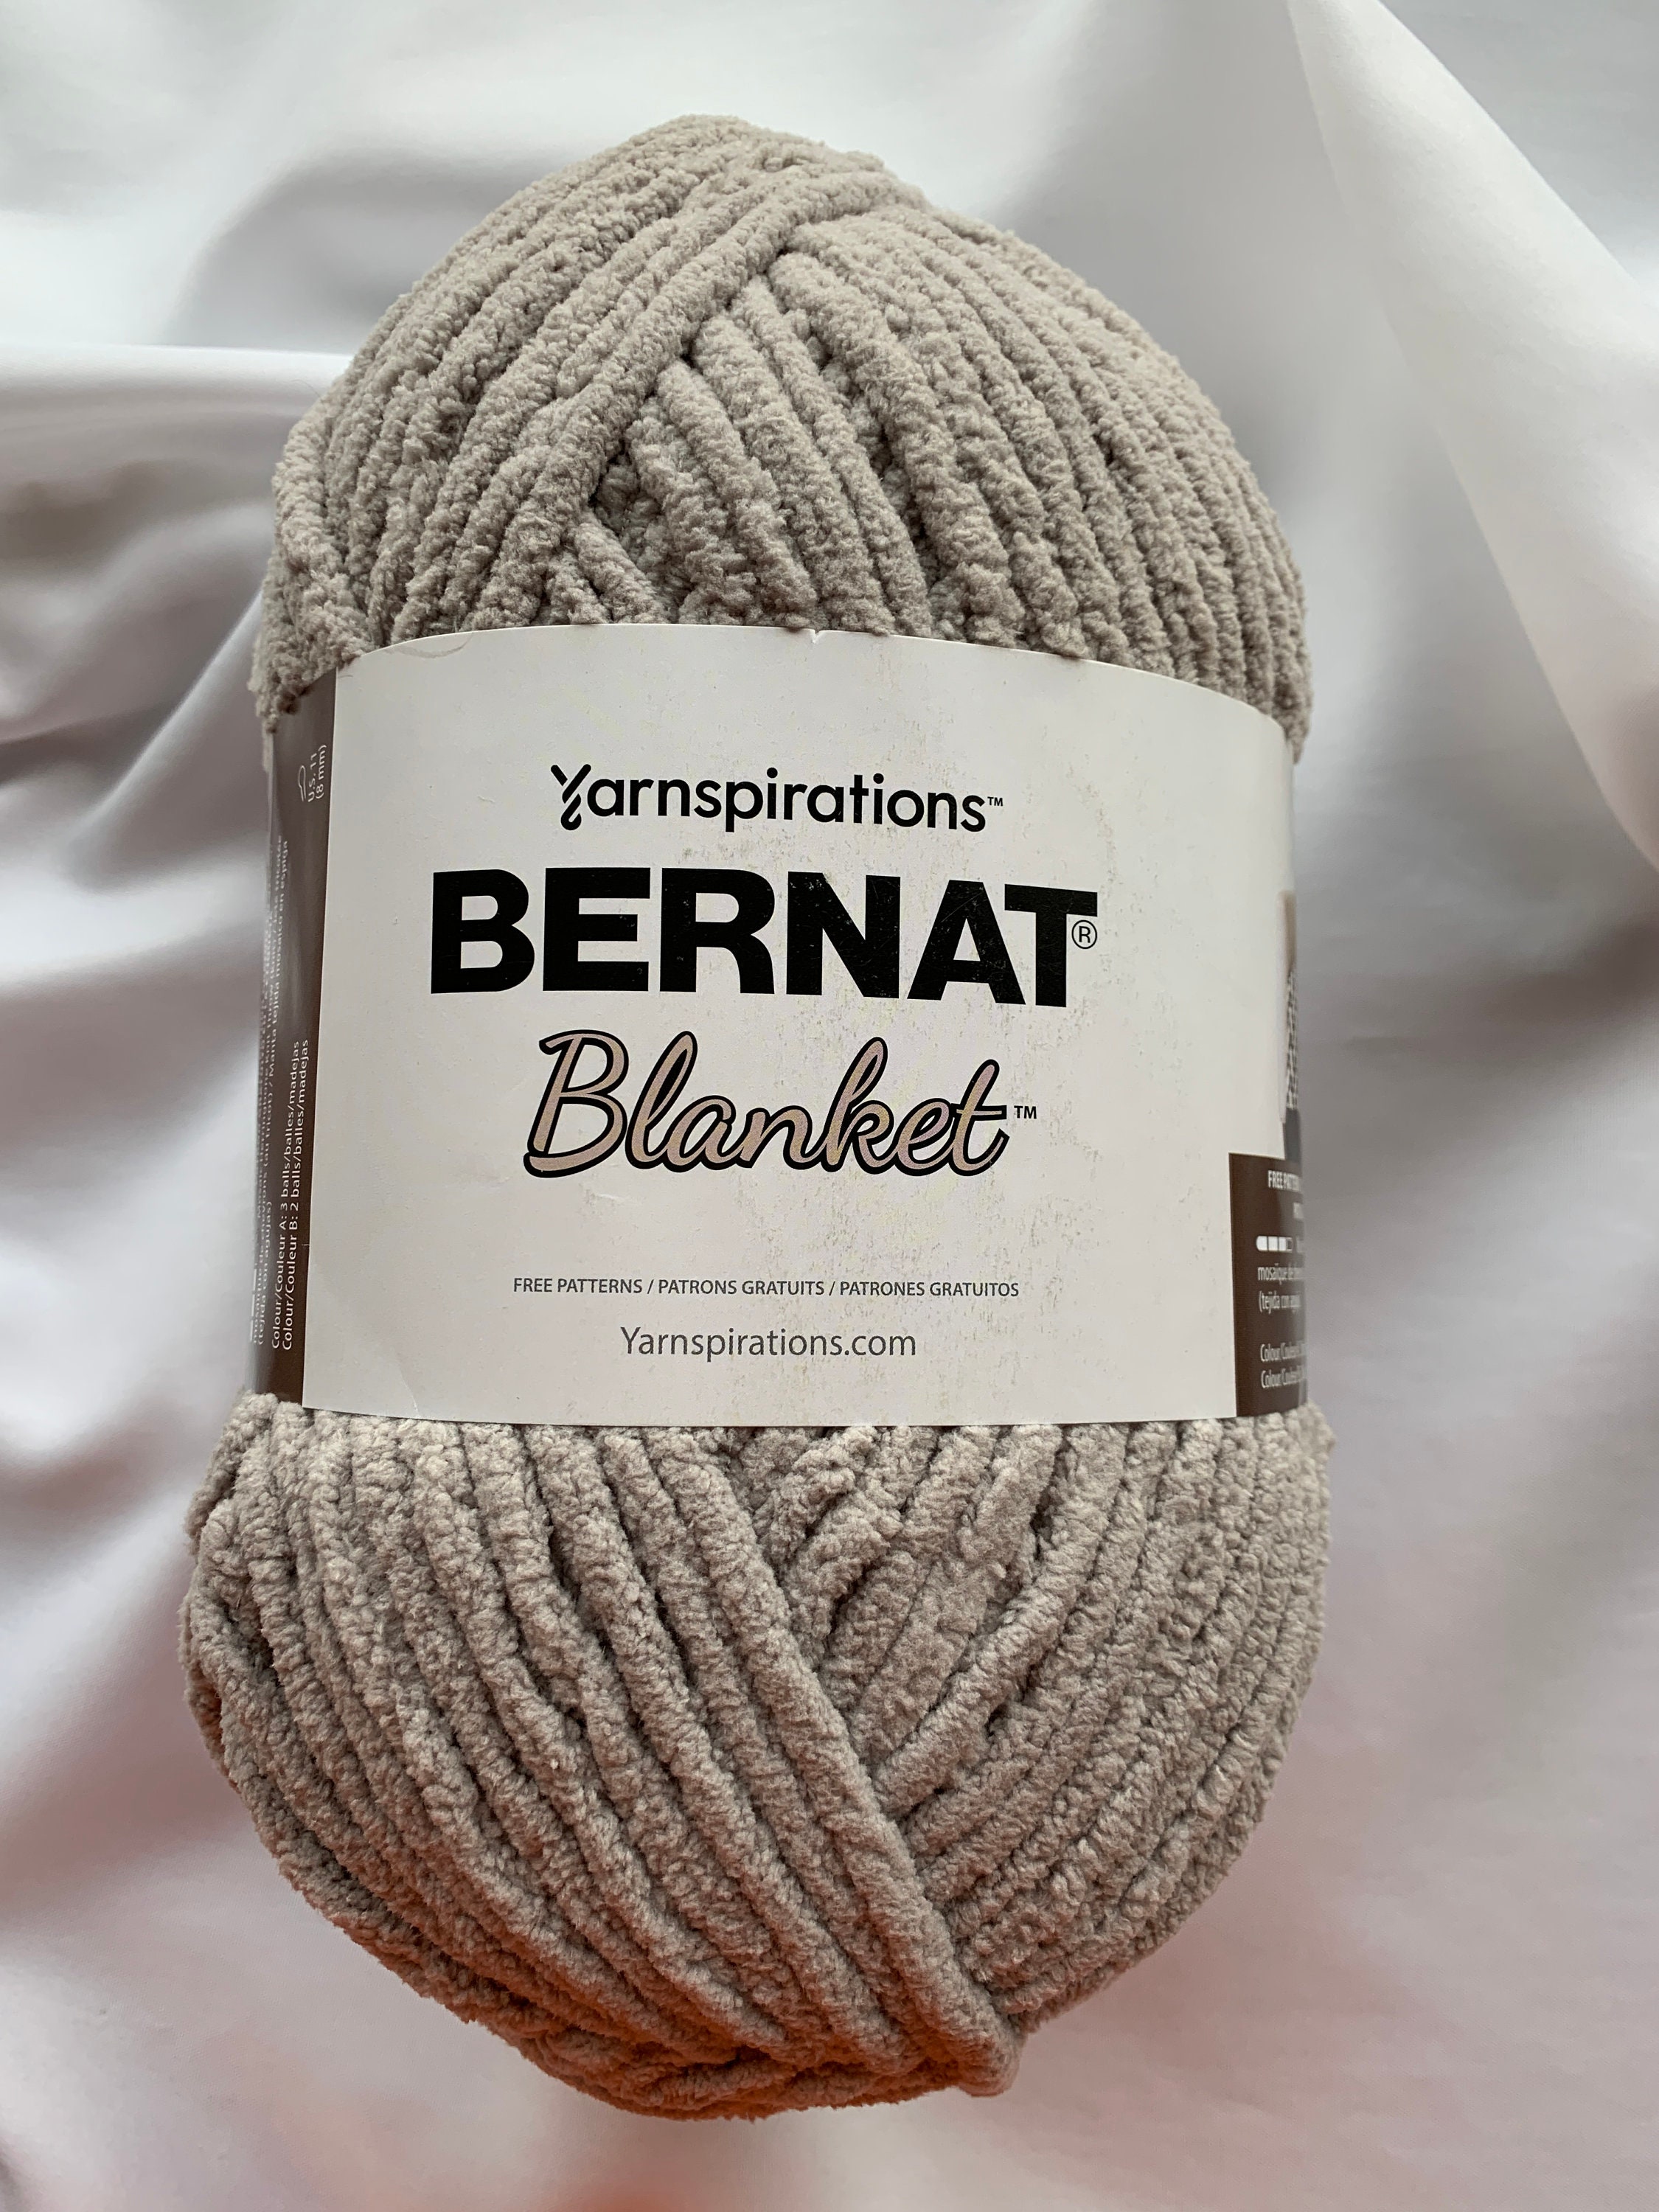 Bernat Maker Home Dec Retro Varg Yarn - 2 Pack of 250g/8.8oz - Cotton - 5  Bulky - 317 Yards - Knitting/Crochet 